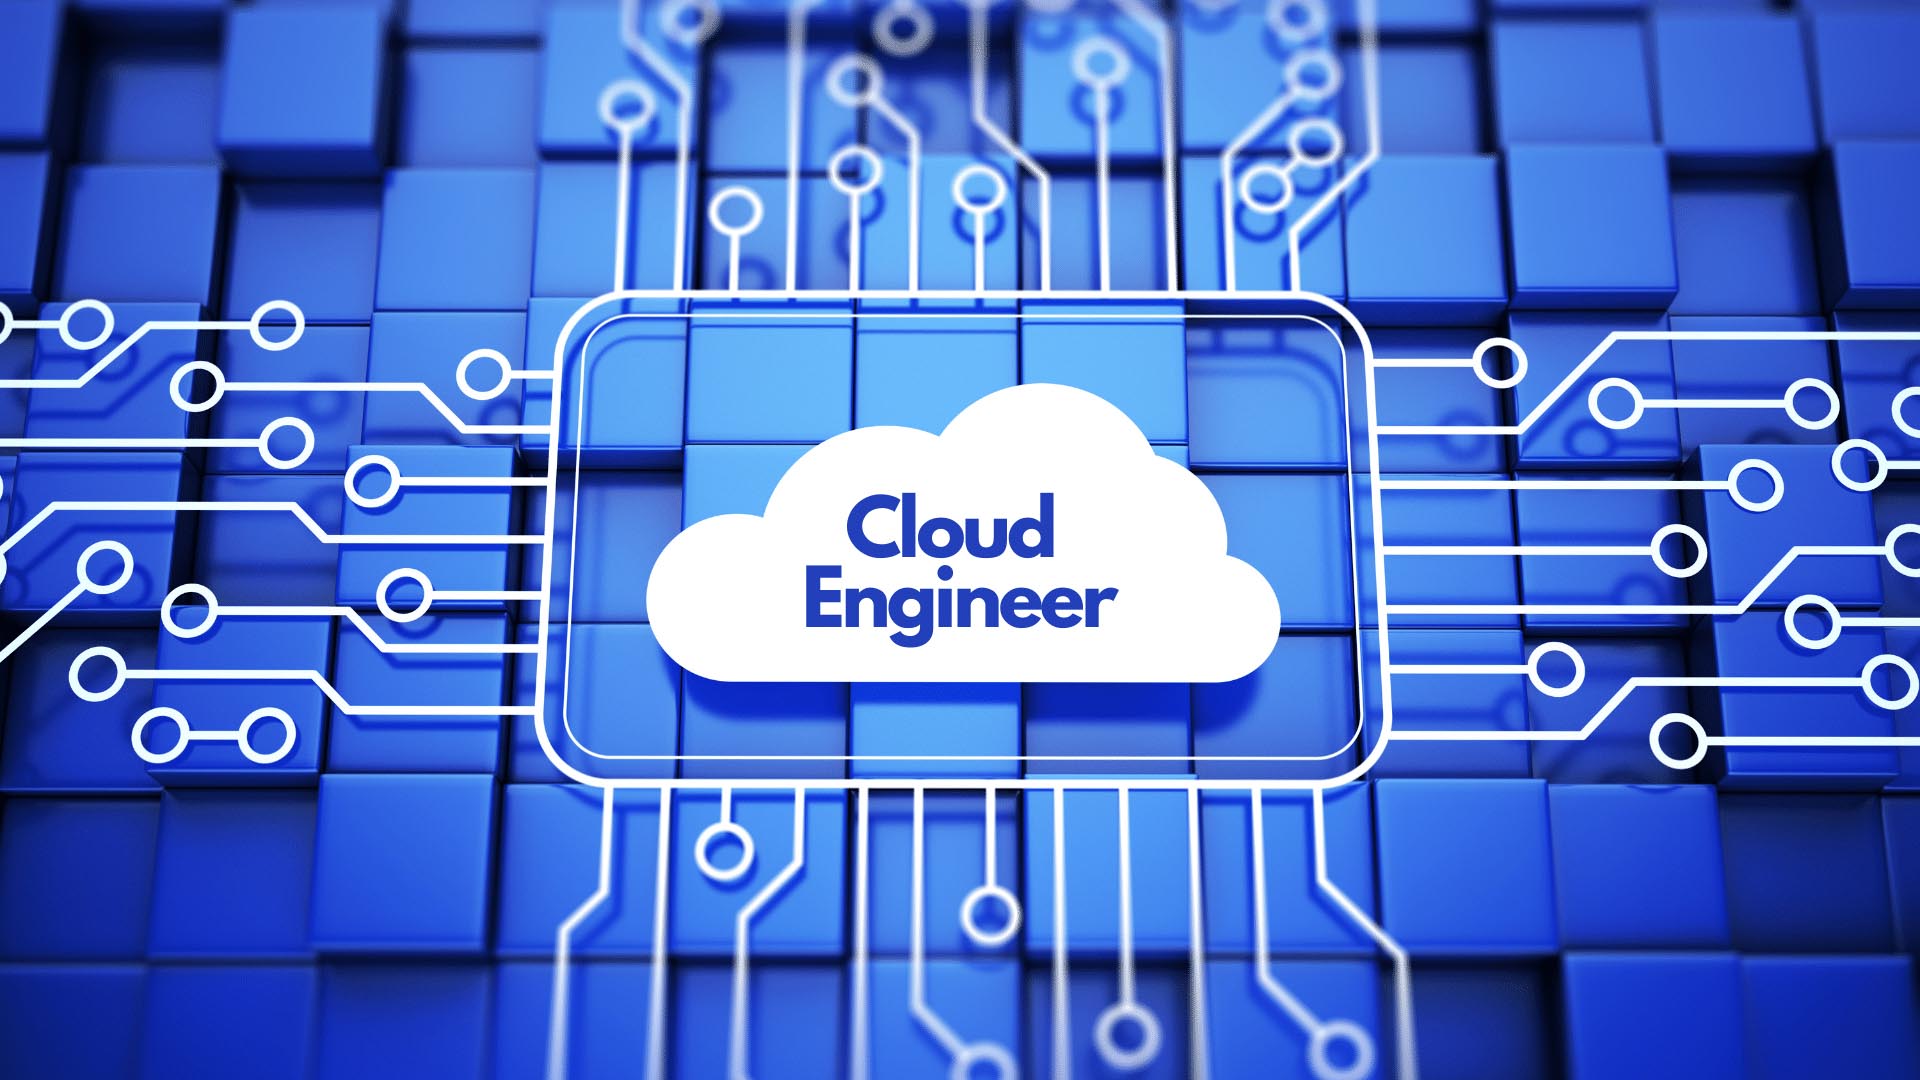 Cloud Engineer